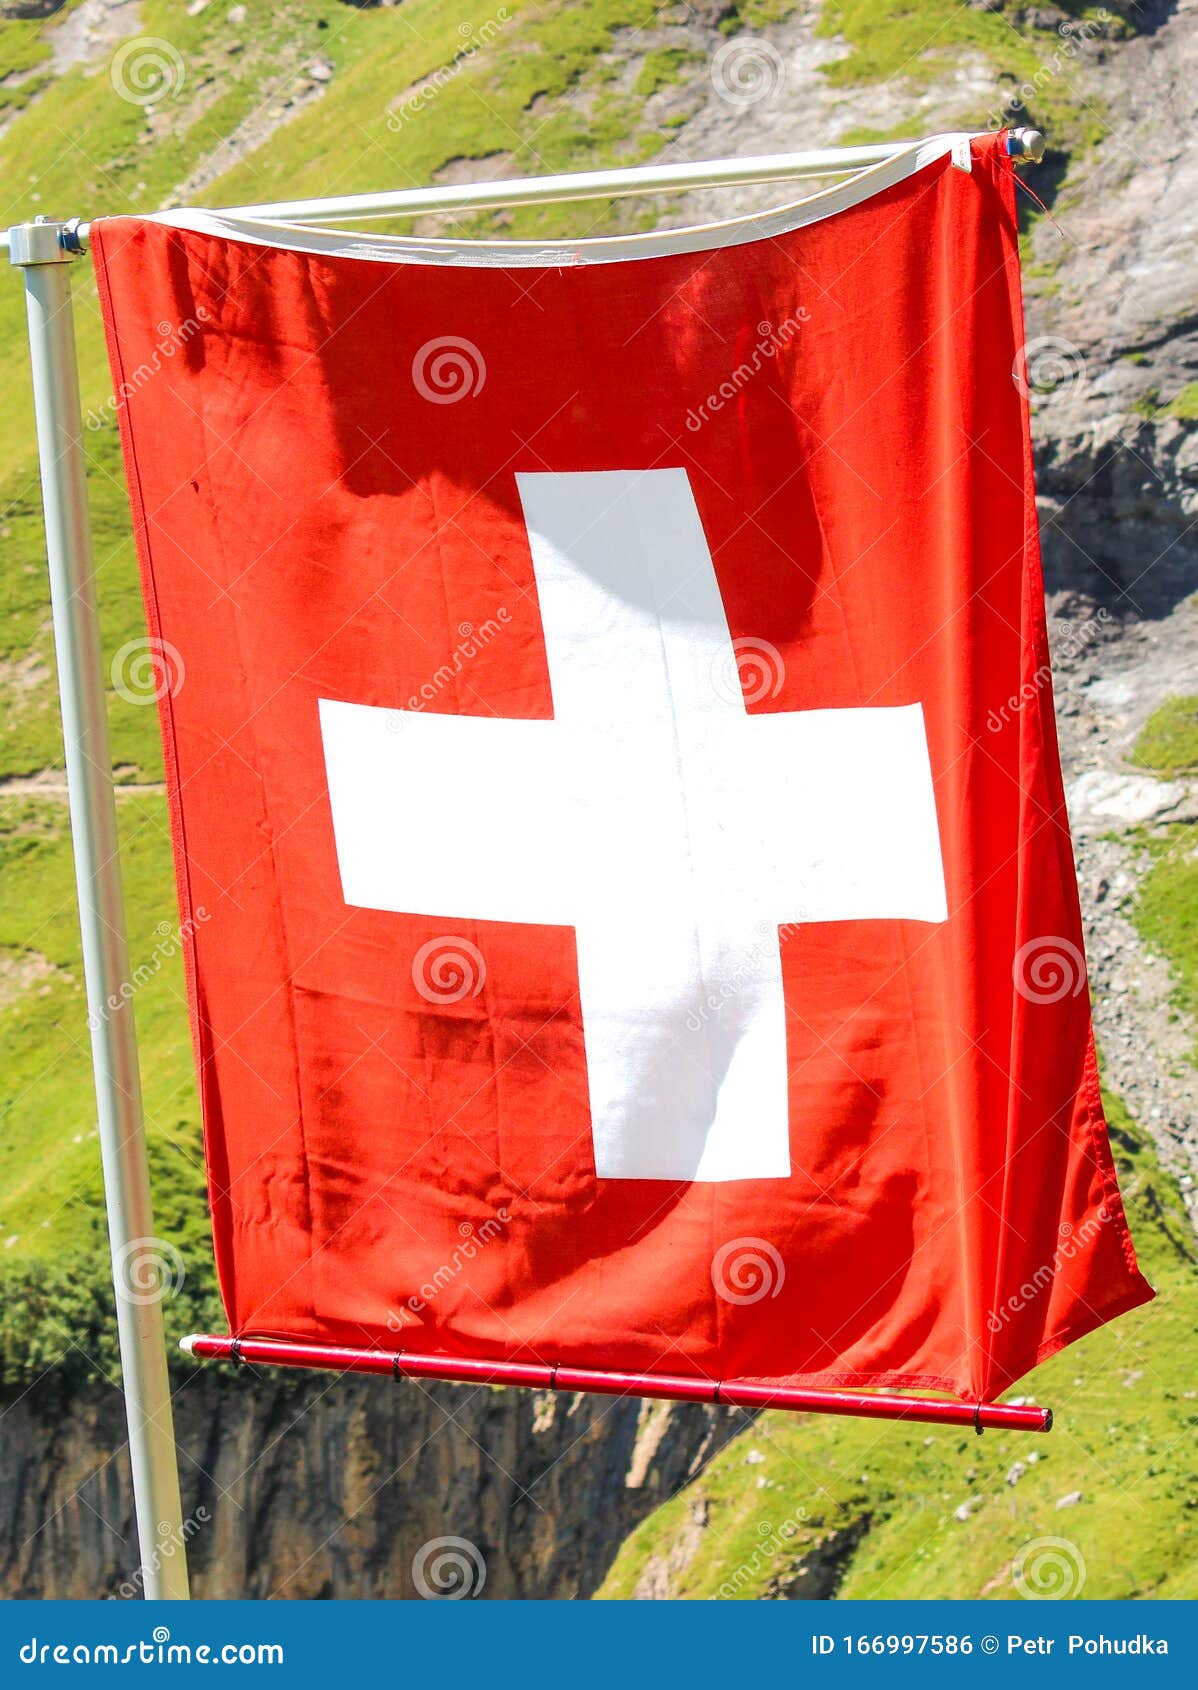 Bức tranh thiên nhiên hùng vĩ, một trong những biểu tượng lâu đời và đặc trưng nhất của Thụy Sĩ - cảnh quan Alphine cùng cờ đỏ trắng. Hãy đắm mình vào không gian tuyệt đẹp này với những hình ảnh liên quan và khám phá những kỳ quan tự nhiên độc đáo nơi đây.